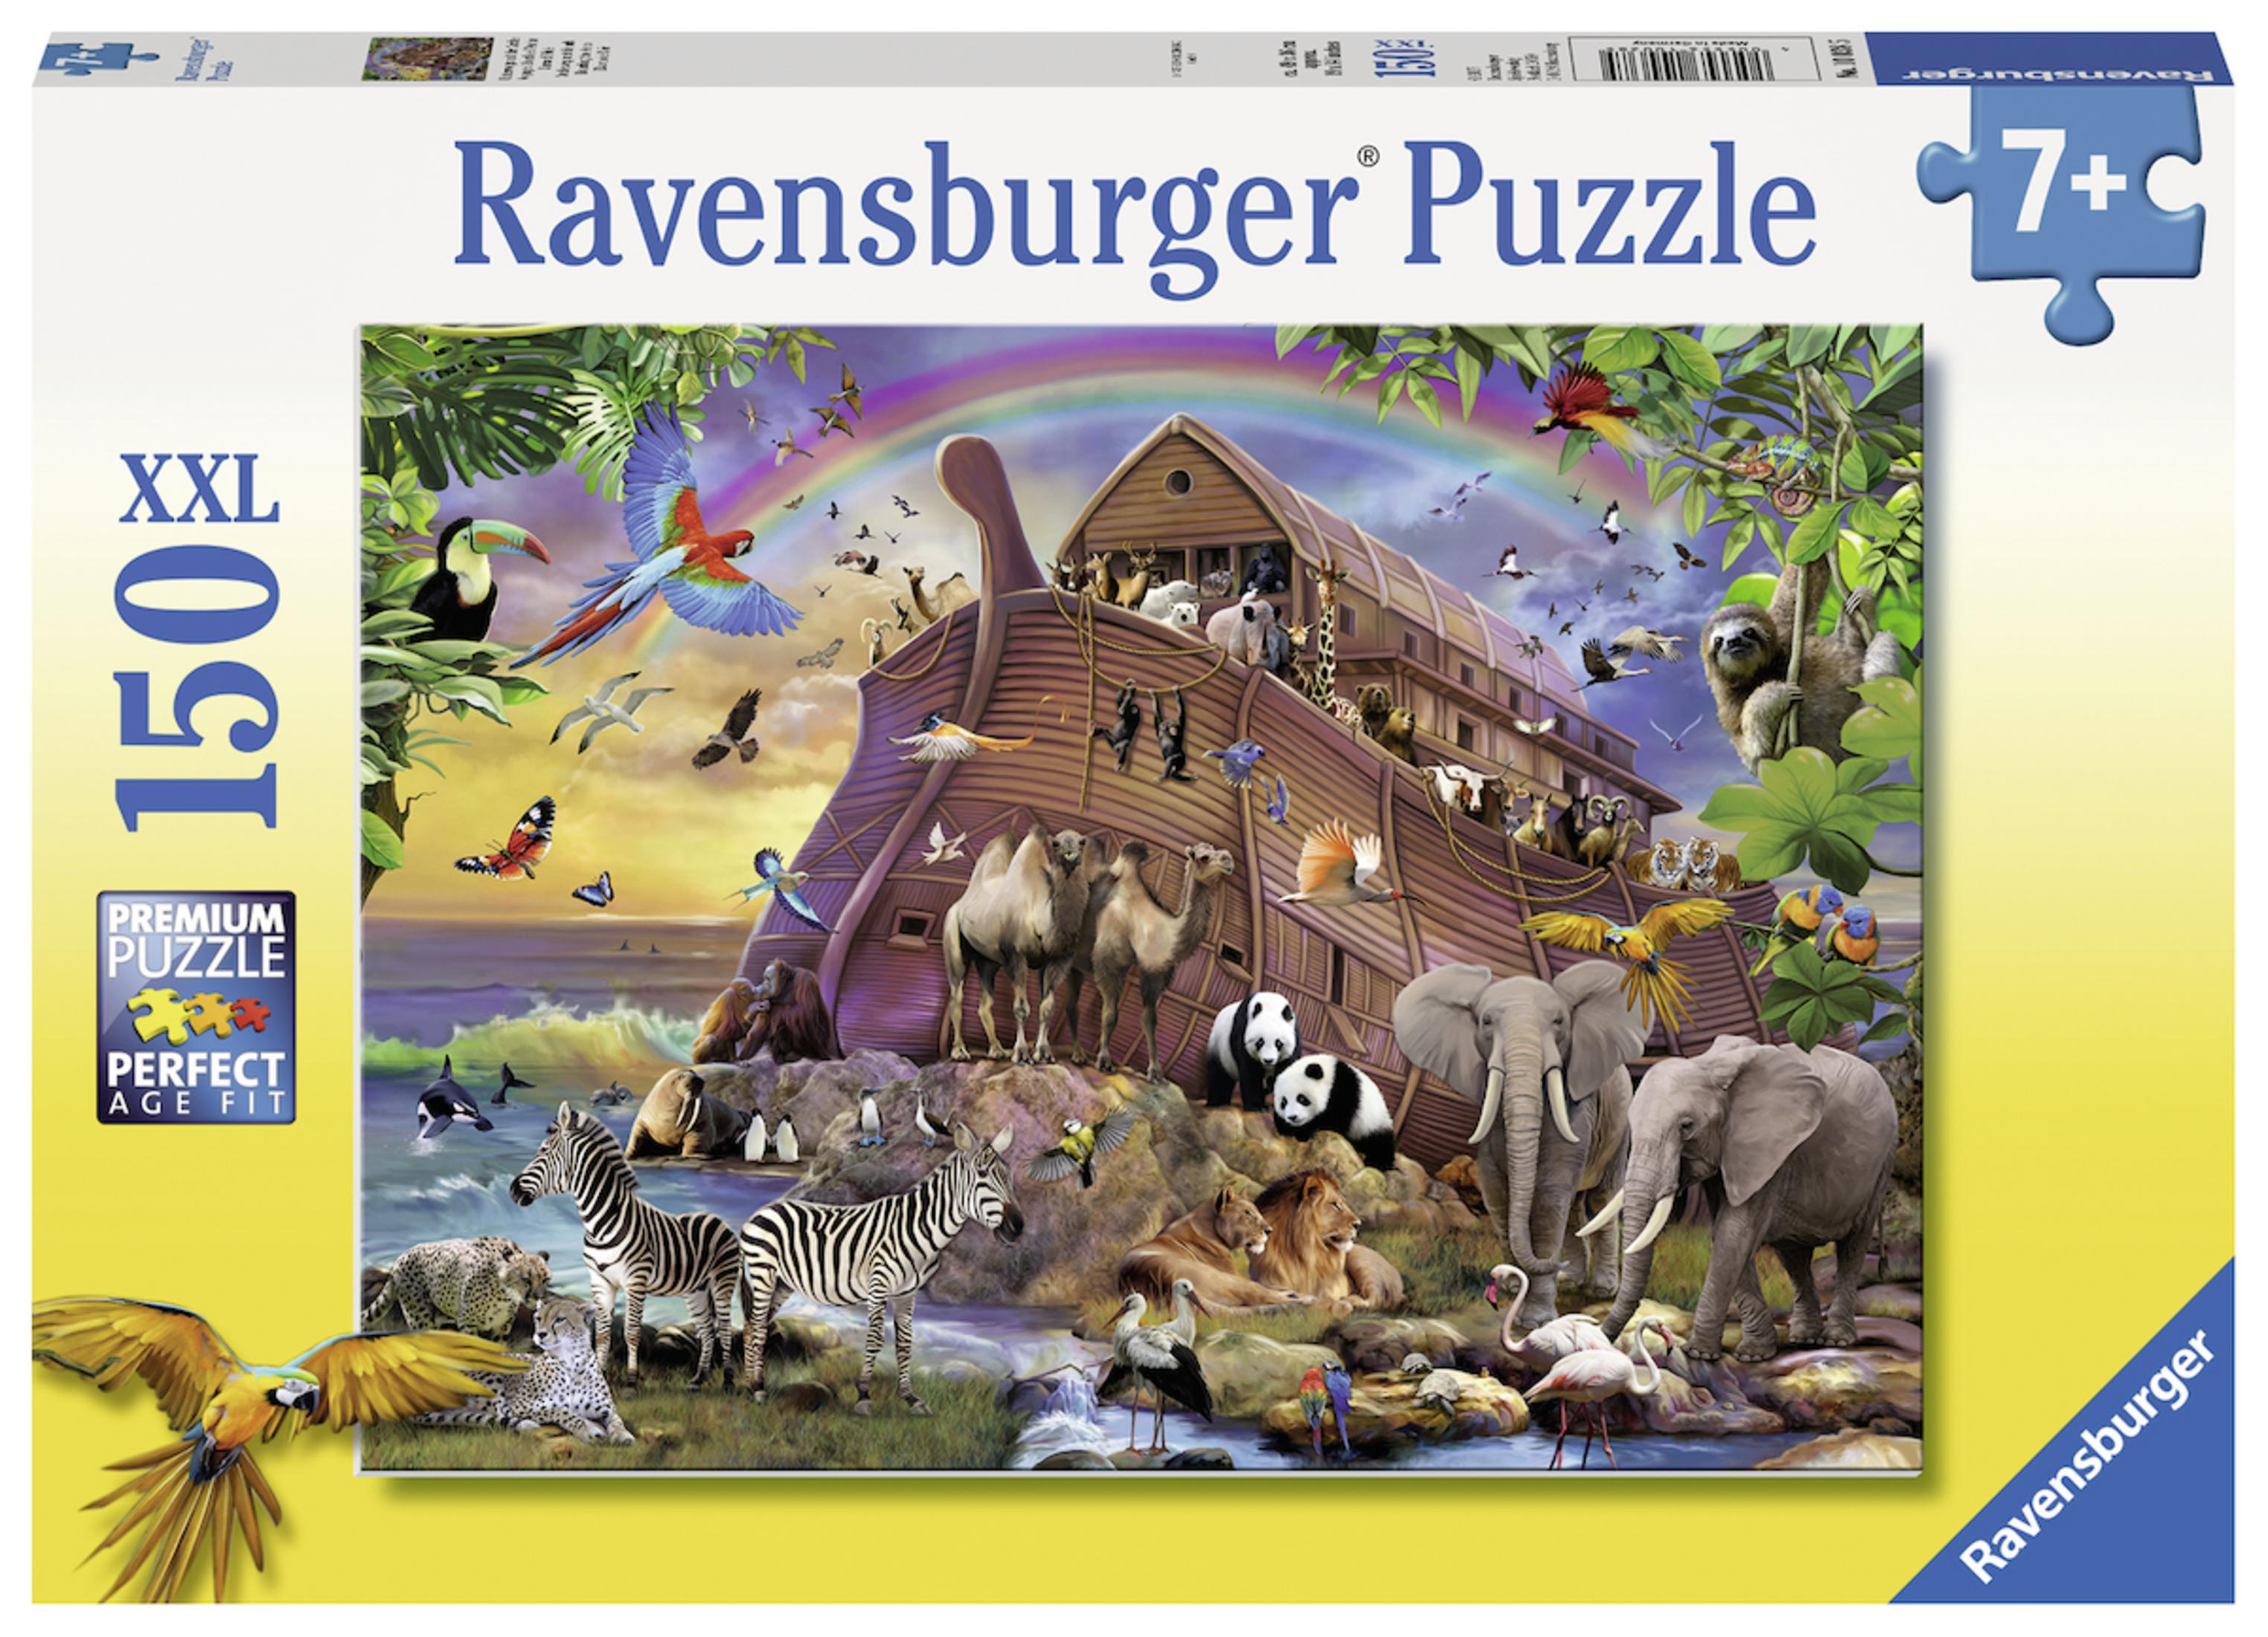 MIT UNTERWEGS ARCHE 10038 RAVENSBURGER DER Puzzle